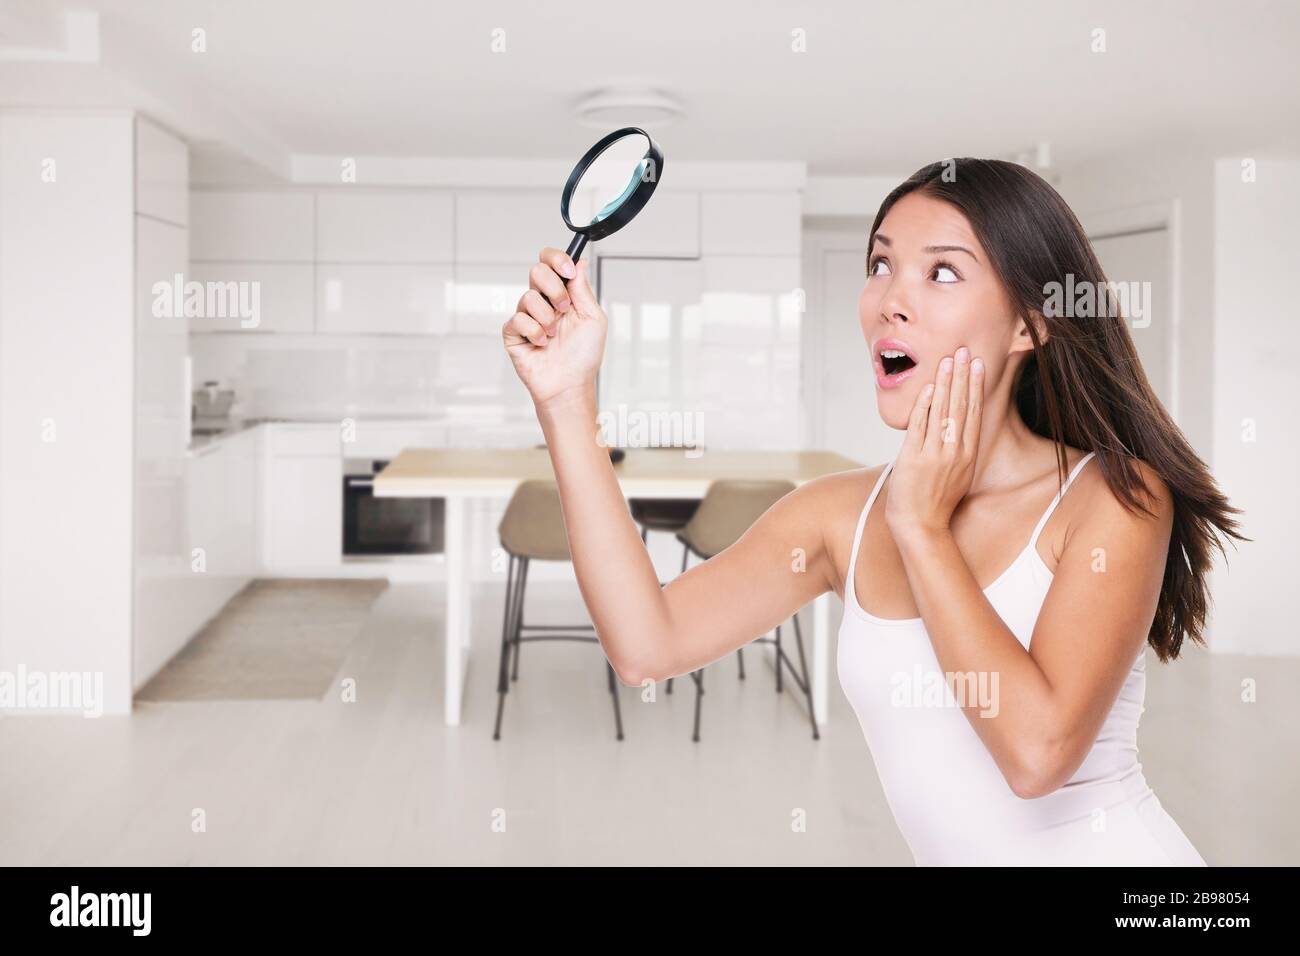 Accueil COVID-19 nettoyage inspection choqué femme asiatique surpris de découvrir des germes partout dans la cuisine sur le comptoir, les surfaces sales qui ont besoin d'être Banque D'Images